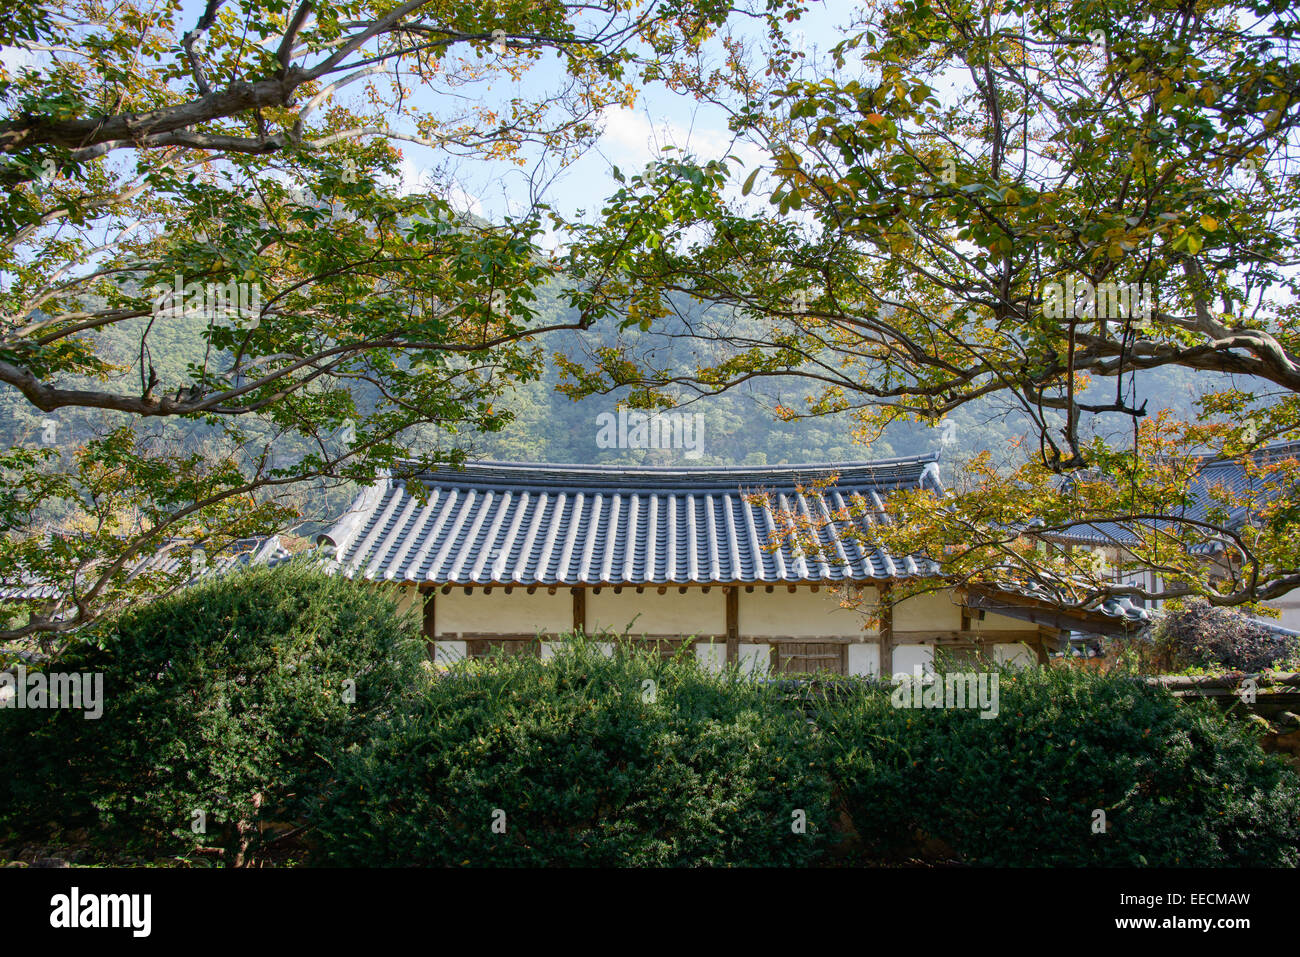 Coreano tradizionale tetto di tegole con mytle arricciato tree Foto Stock